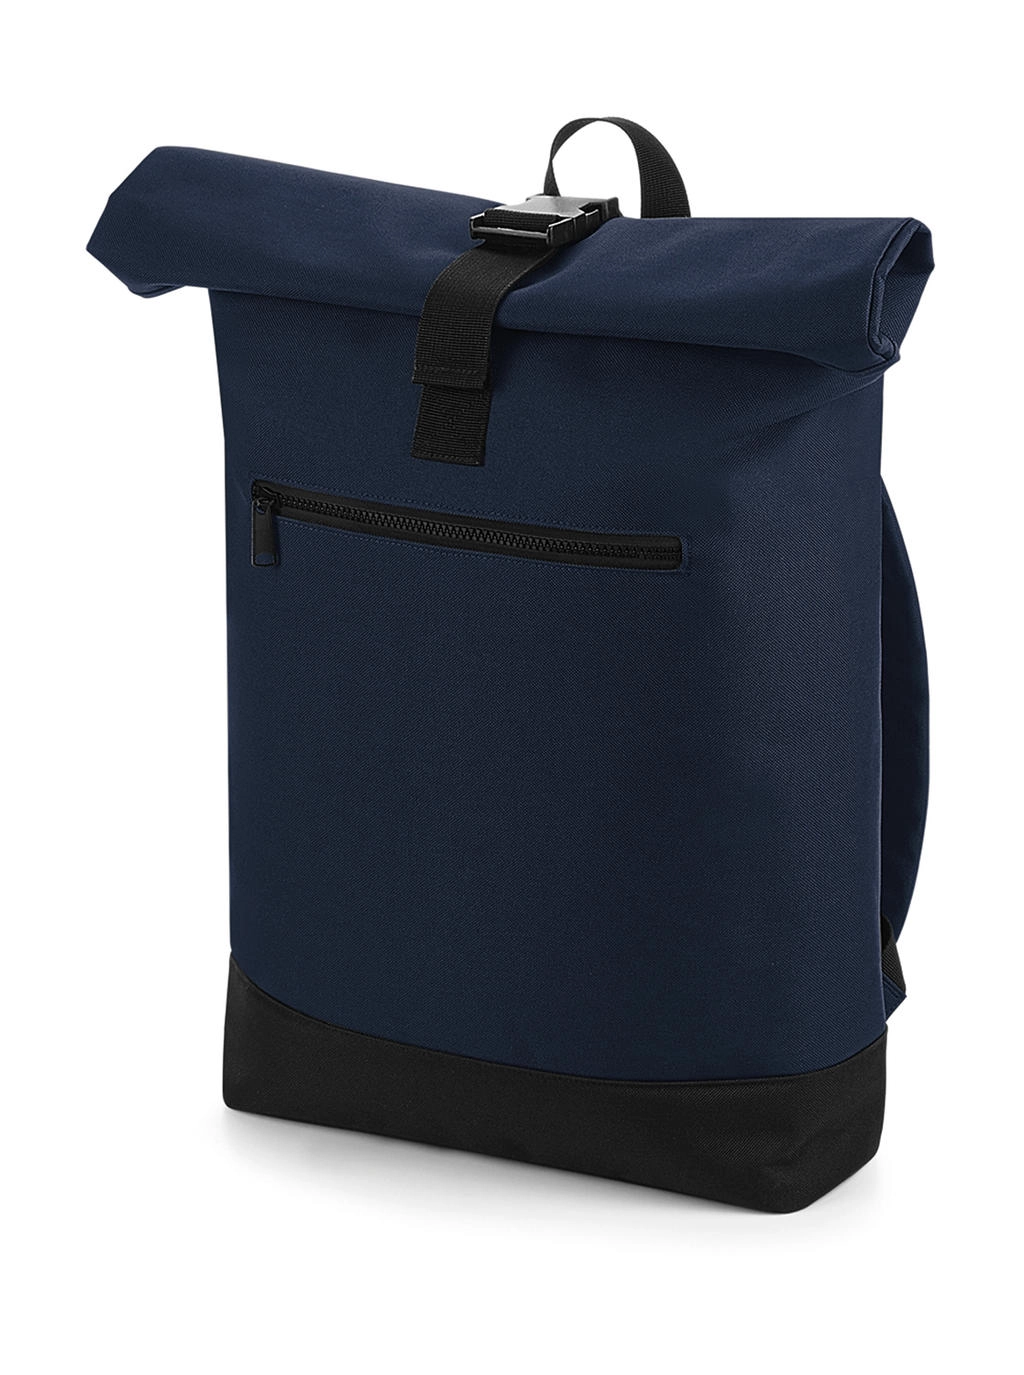 Roll-Top Backpack zum Besticken und Bedrucken in der Farbe French Navy mit Ihren Logo, Schriftzug oder Motiv.